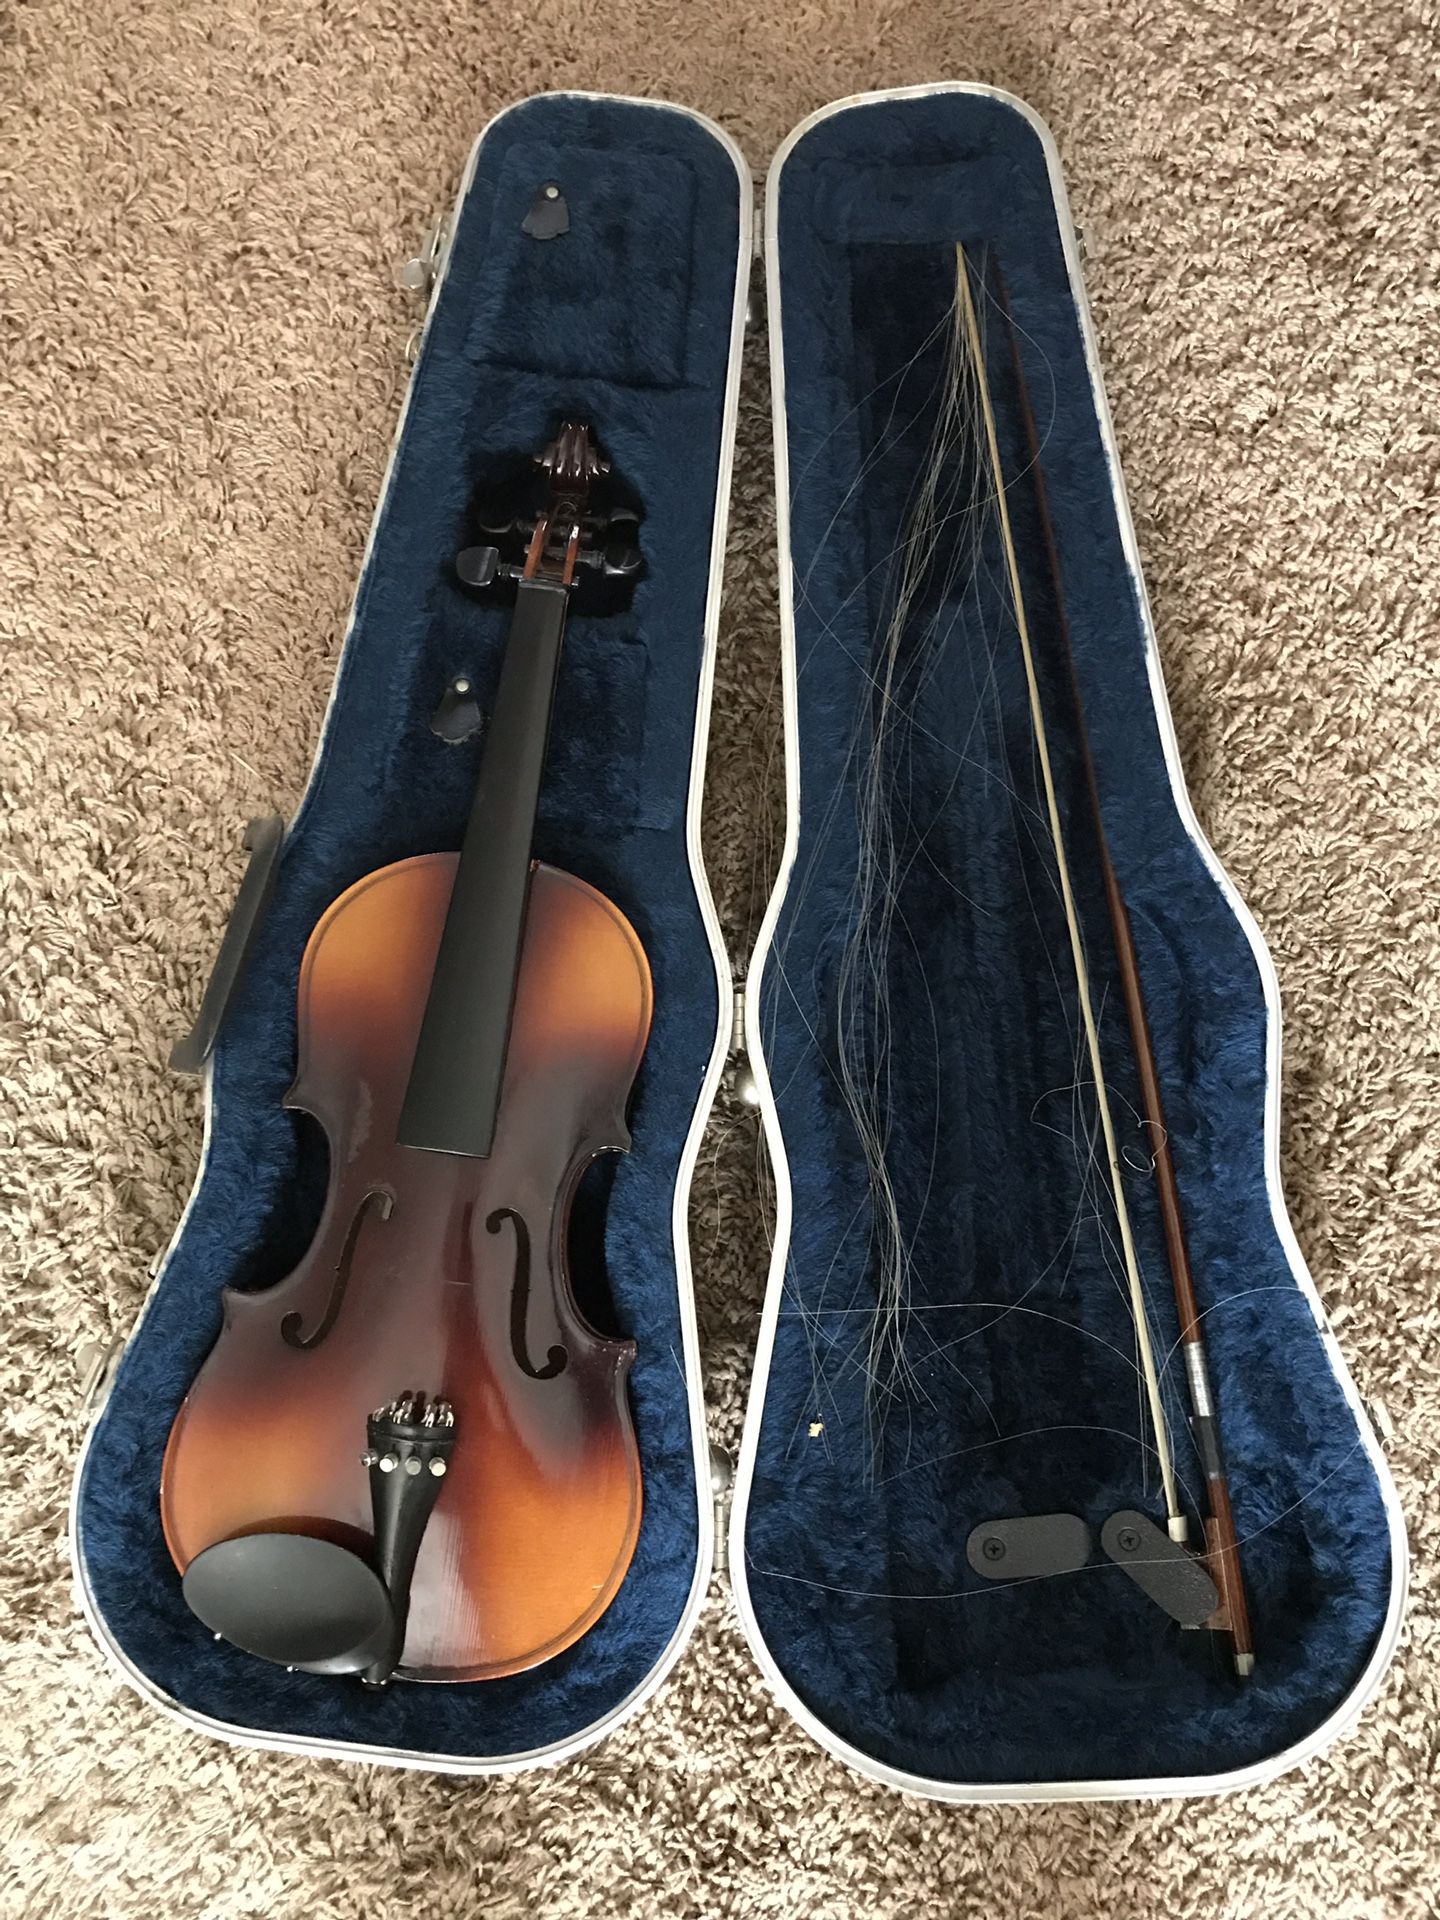 Anton Benton Violin and case